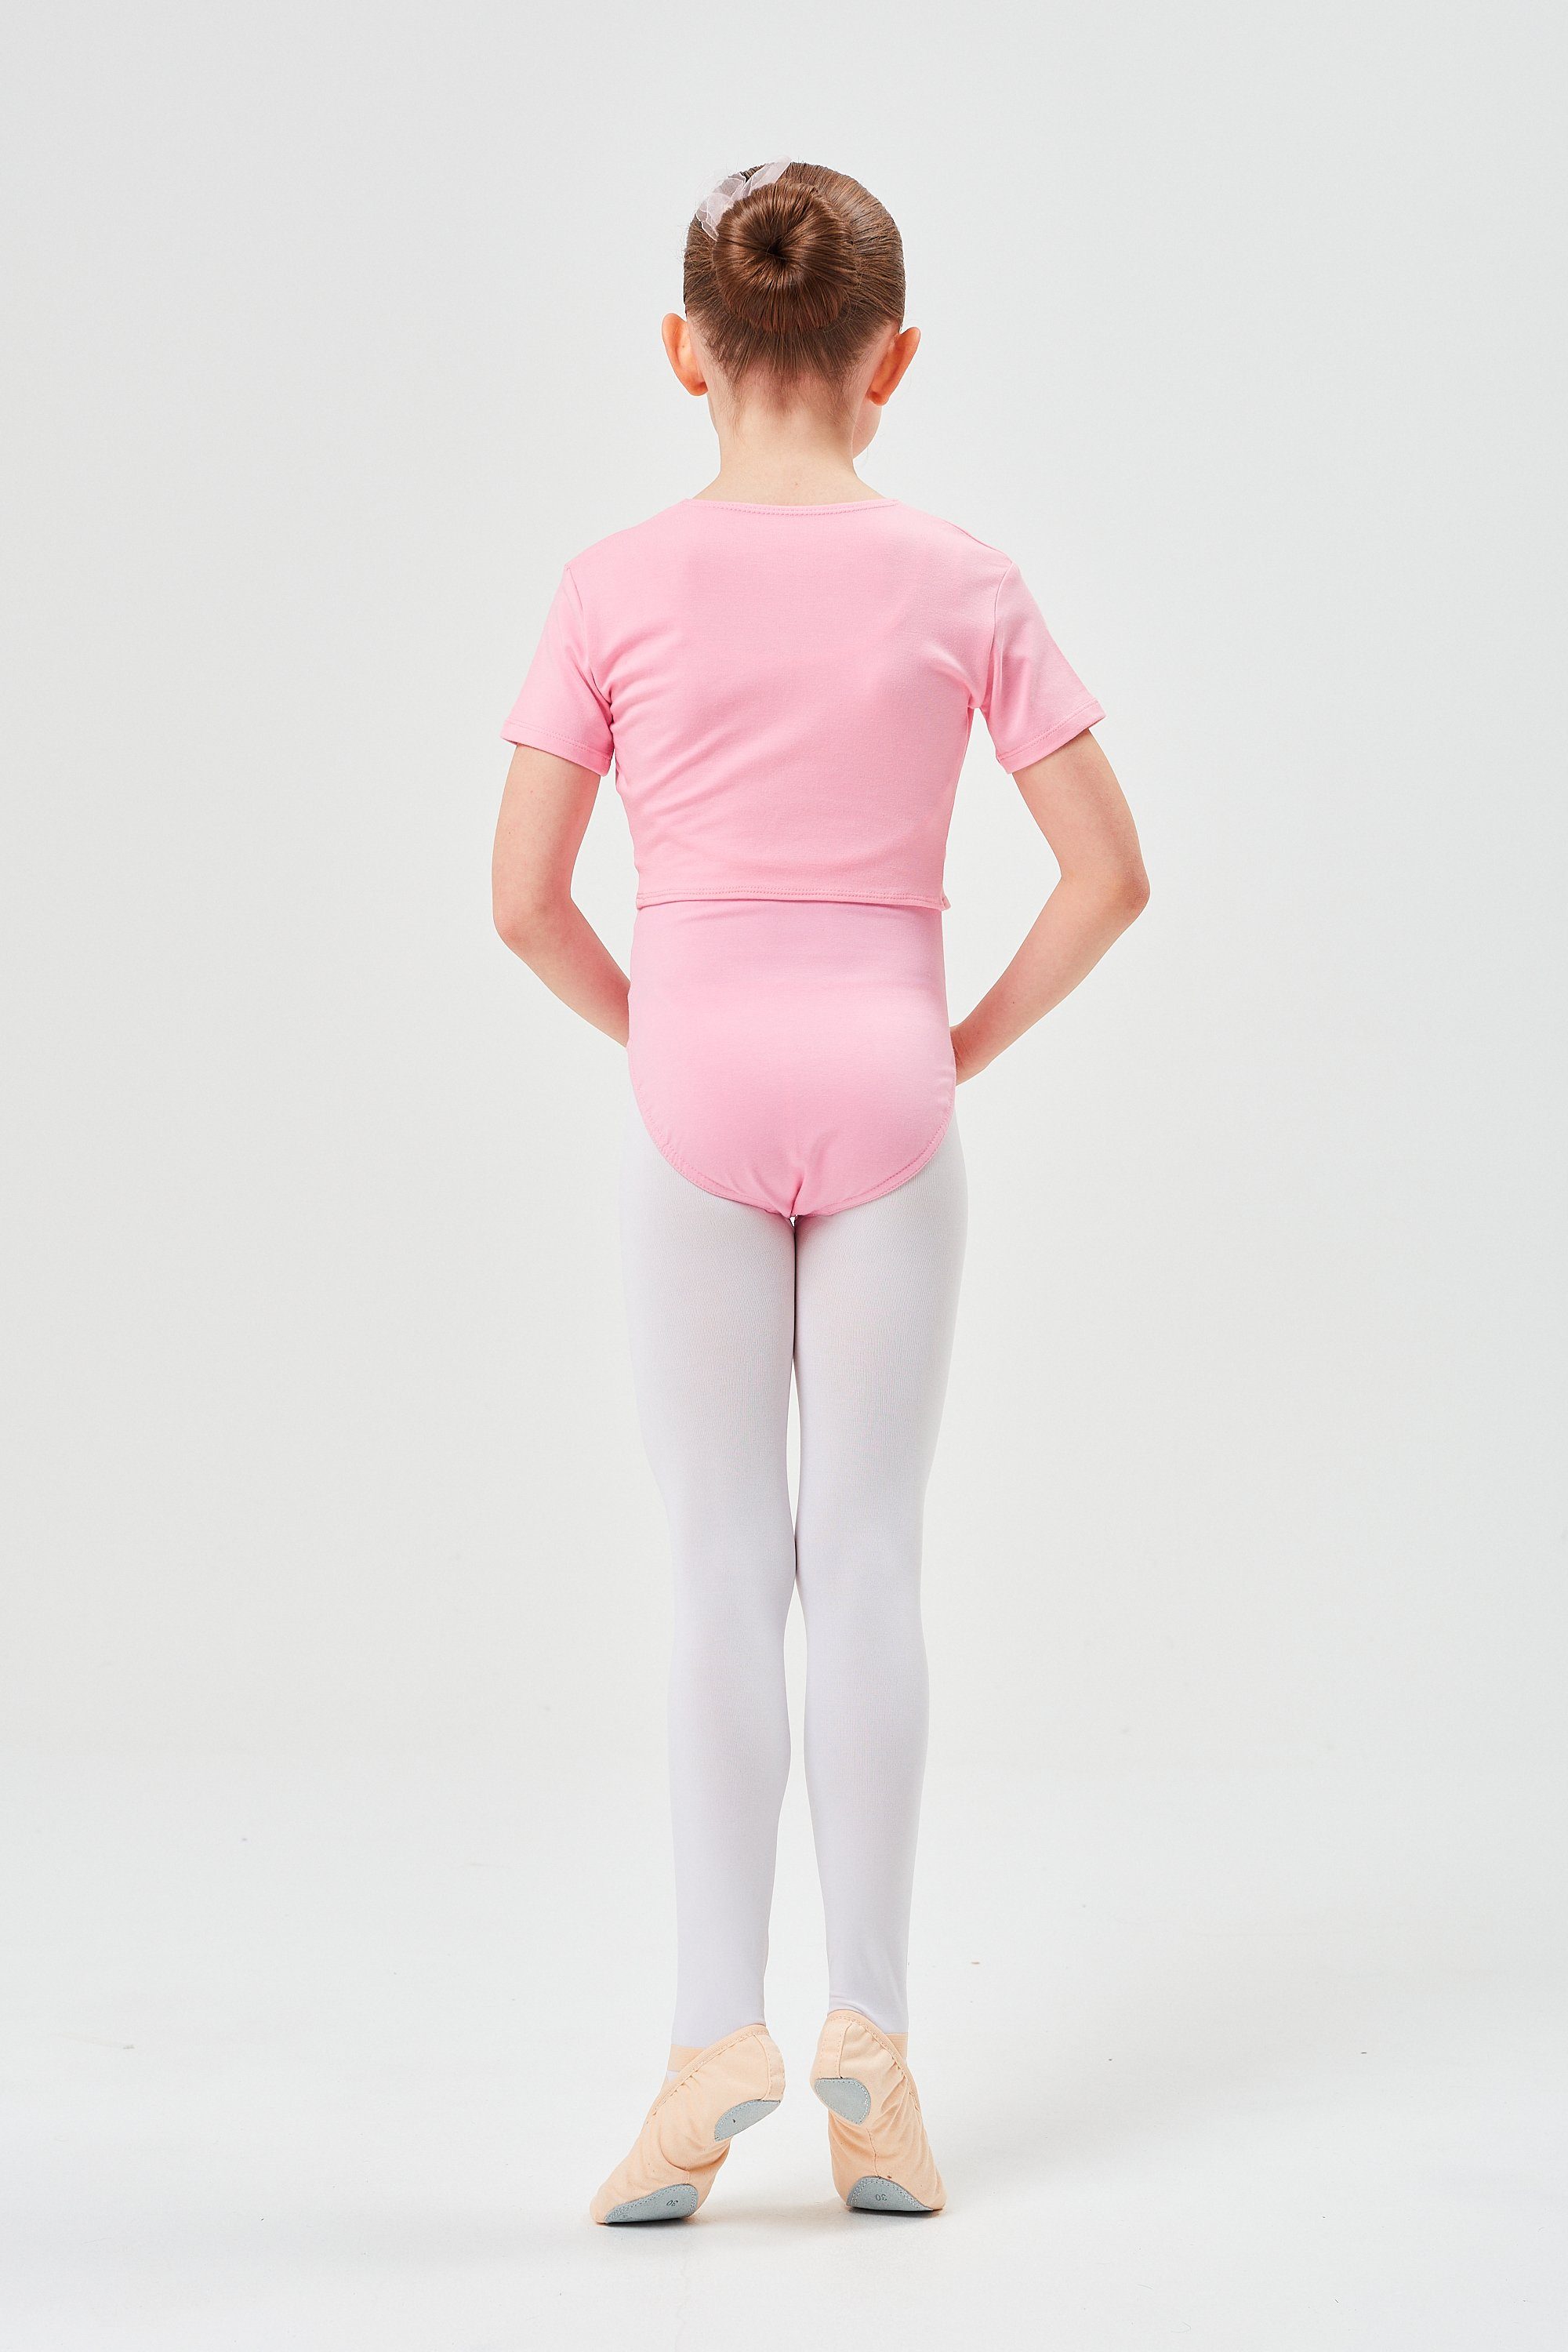 Baumwolle Mädchen Top Ballett Crop-Top tanzmuster wunderbar weicher für Madita aus Kurzarm rosa